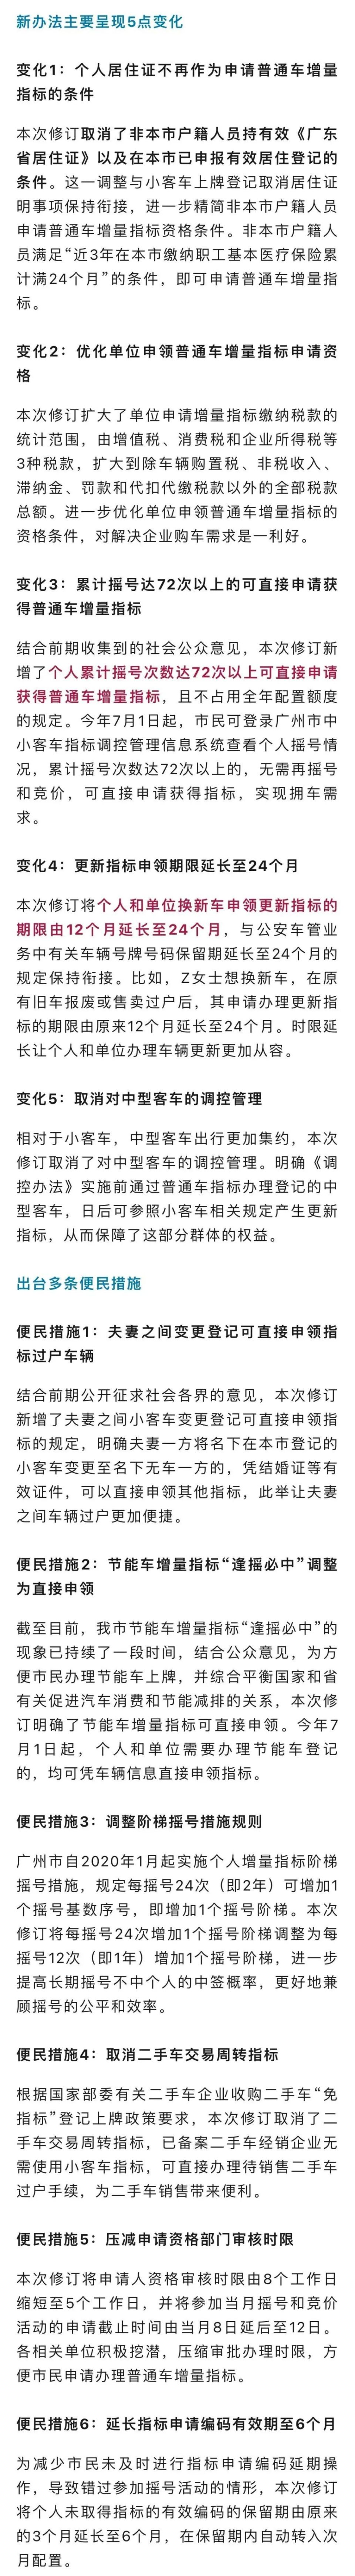 广州市小客车指标调控管理部门提醒市民:因6月9日后新提出的普通车